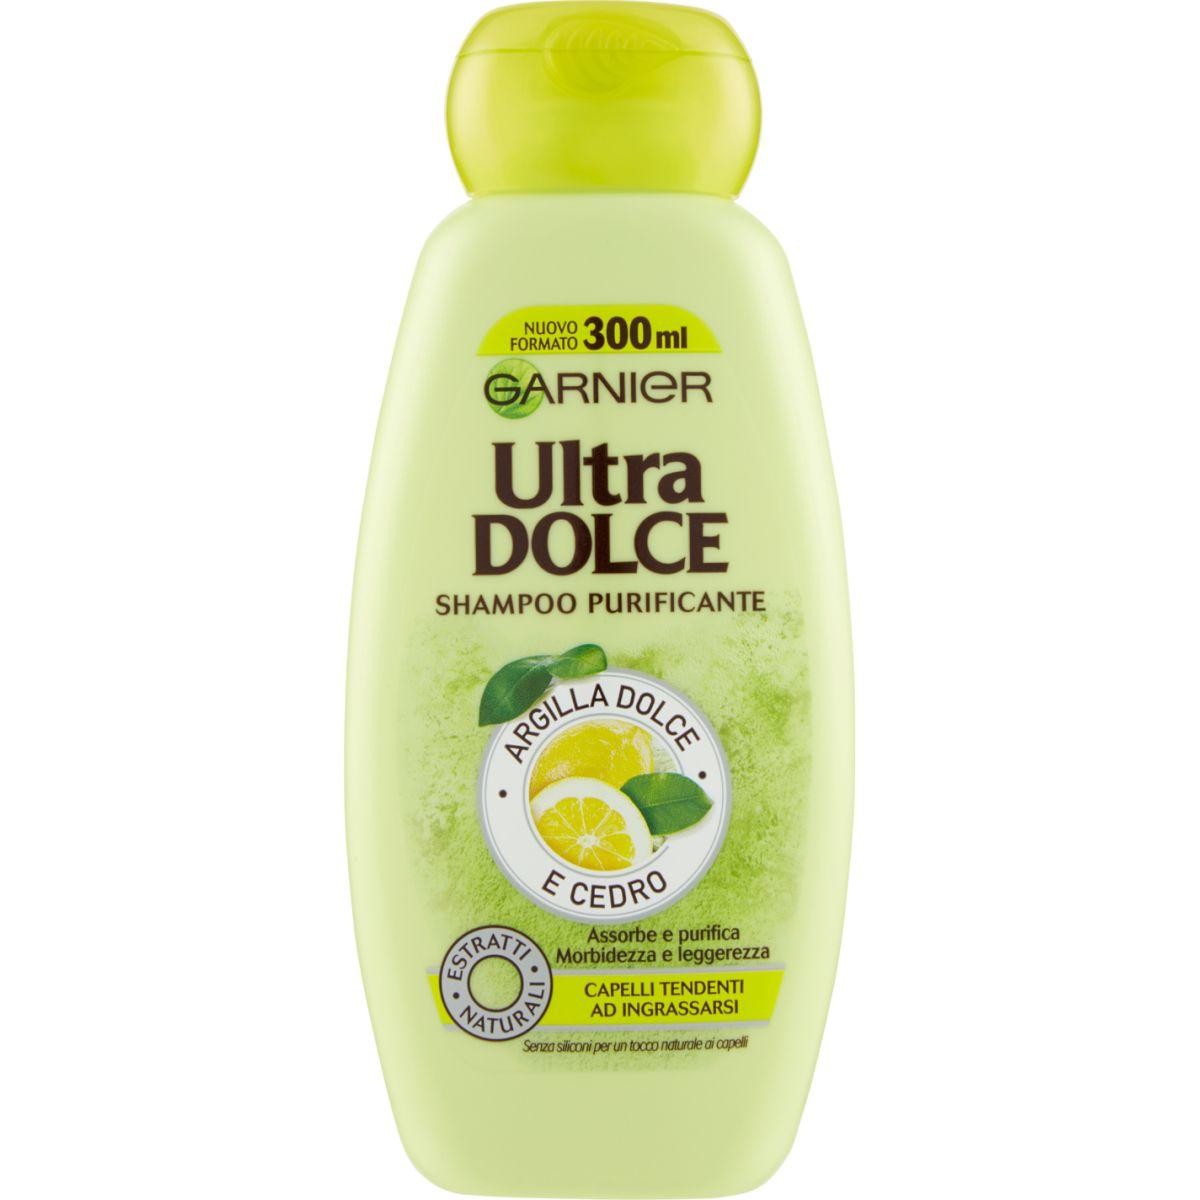 Garnier Ultra Dolce Shampoo Purificante - Argilla Dolce e Cedro